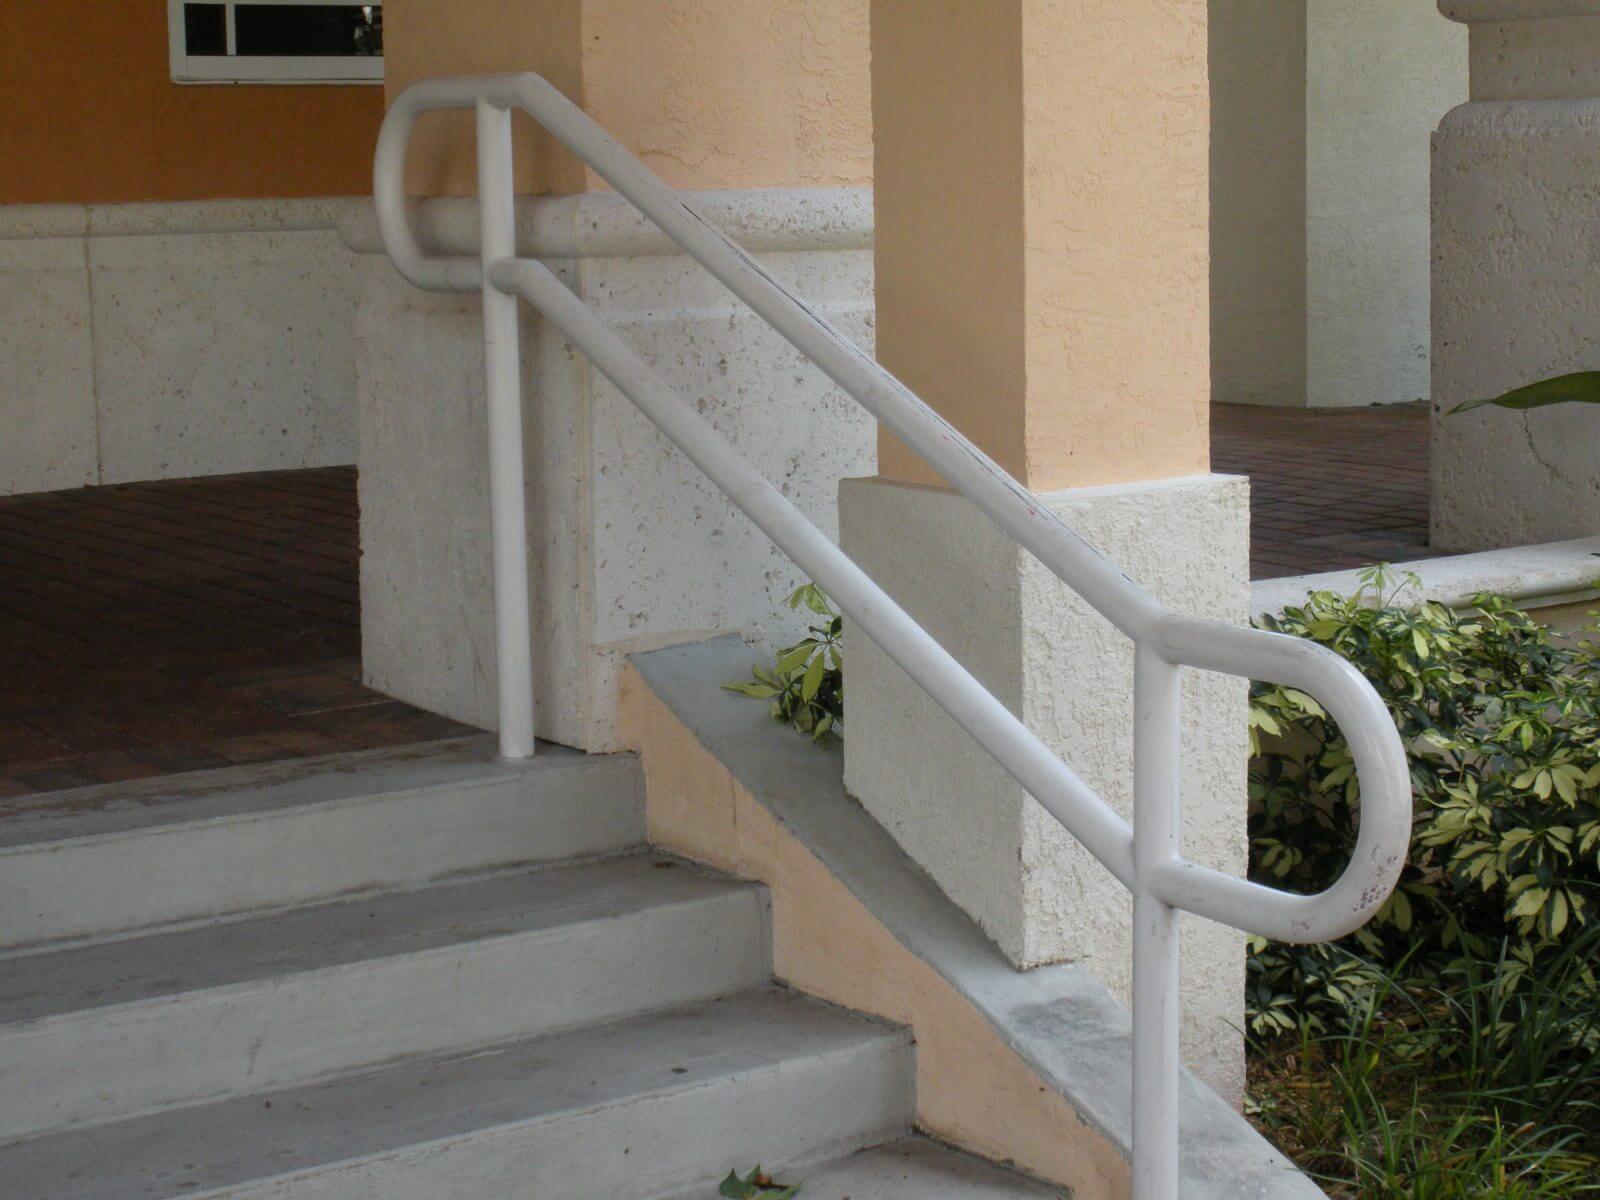 samples of wooden handicap railings